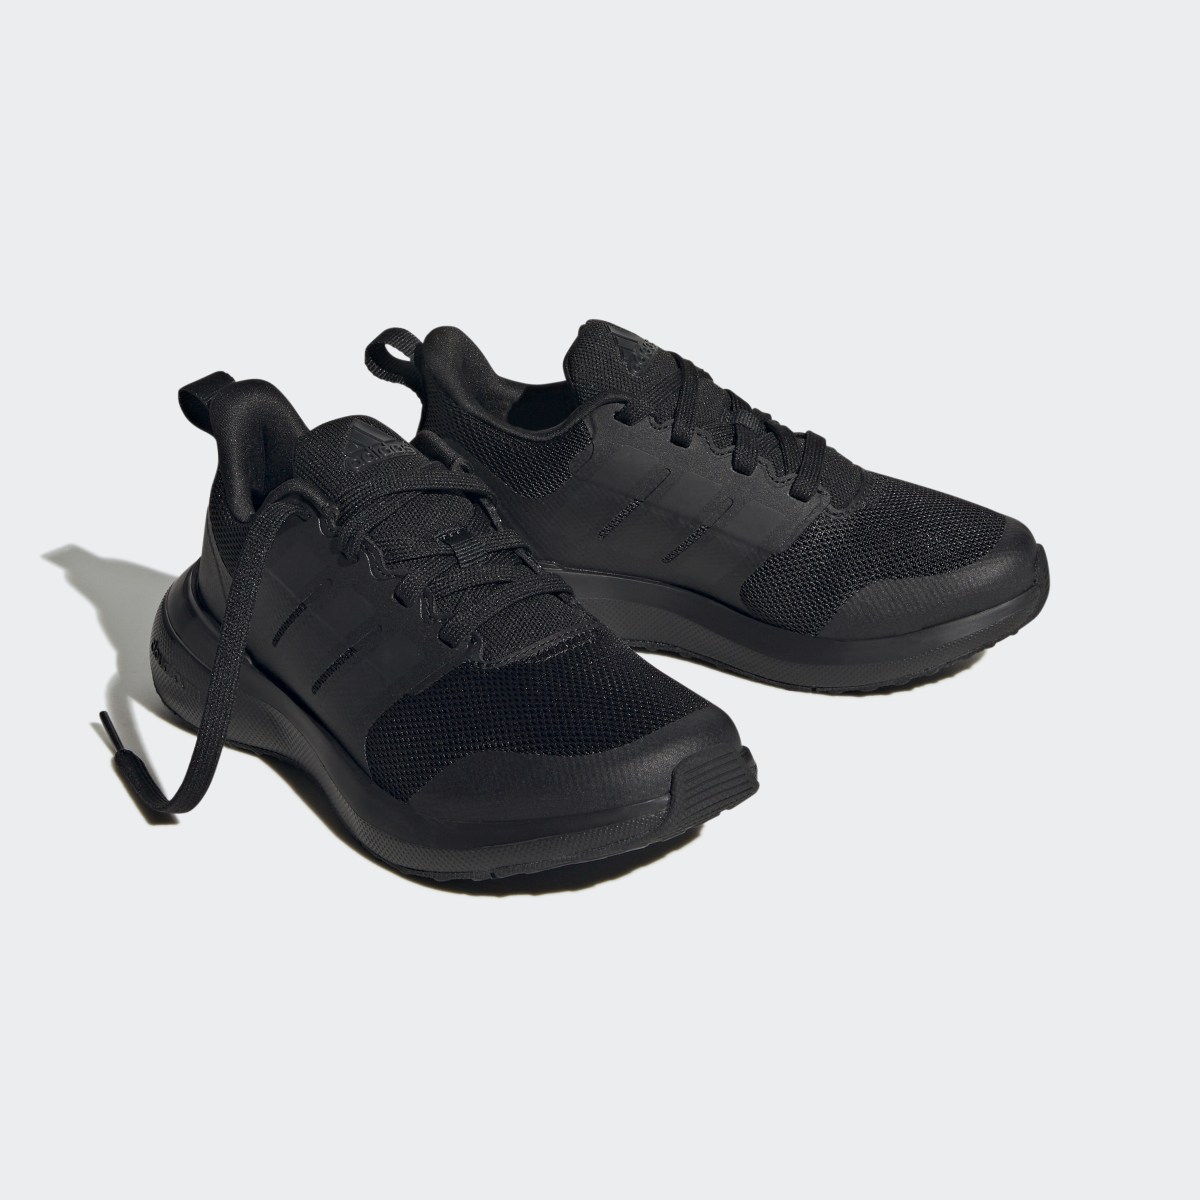 Adidas FortaRun 2.0 Cloudfoam Shoes. 5